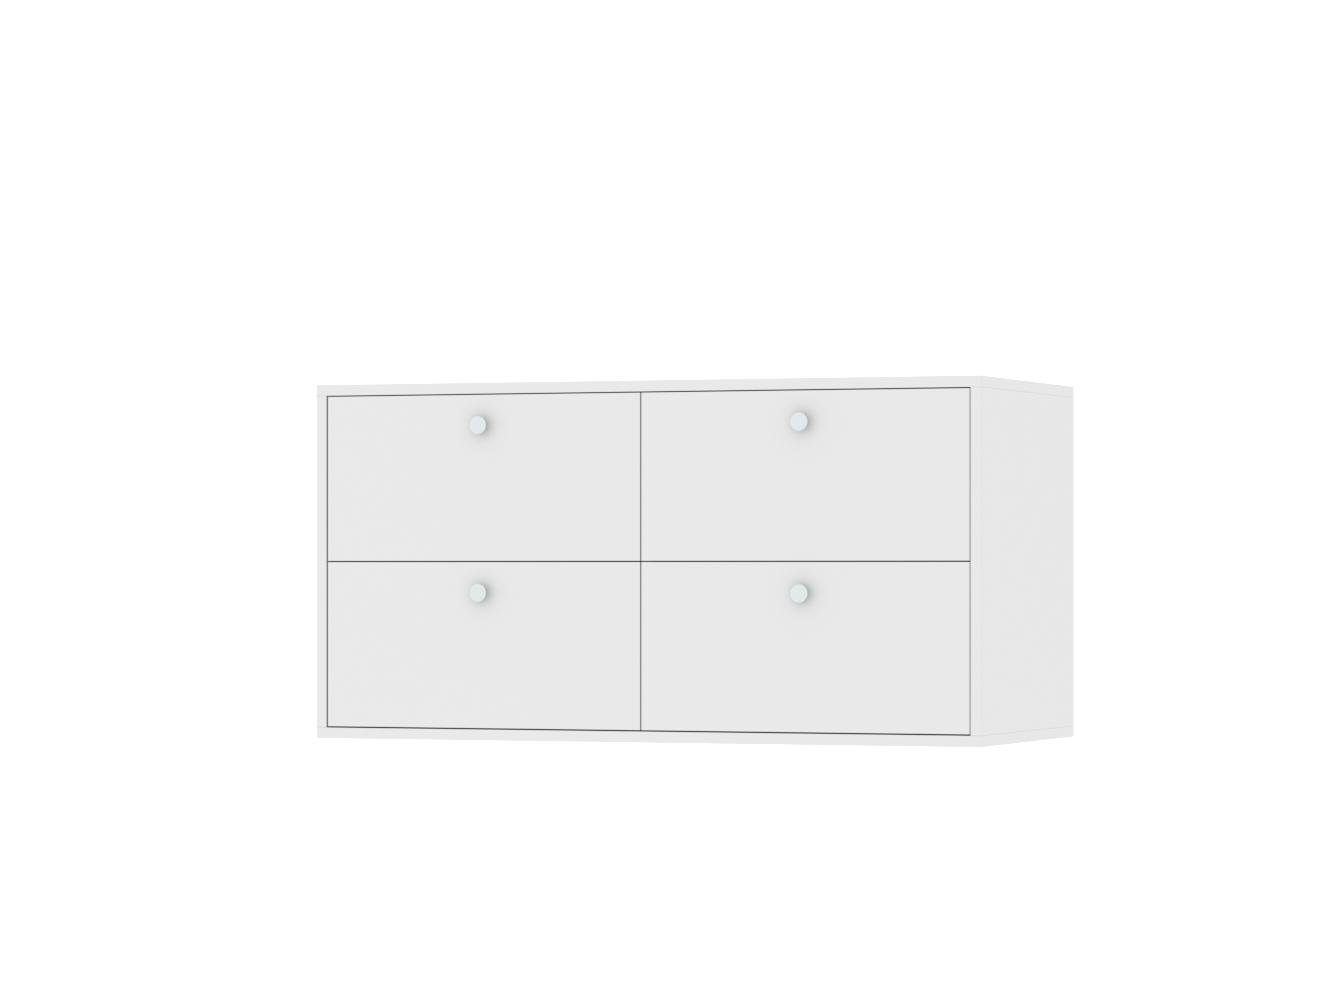 Комод Каллакс 14 white ИКЕА (IKEA) изображение товара